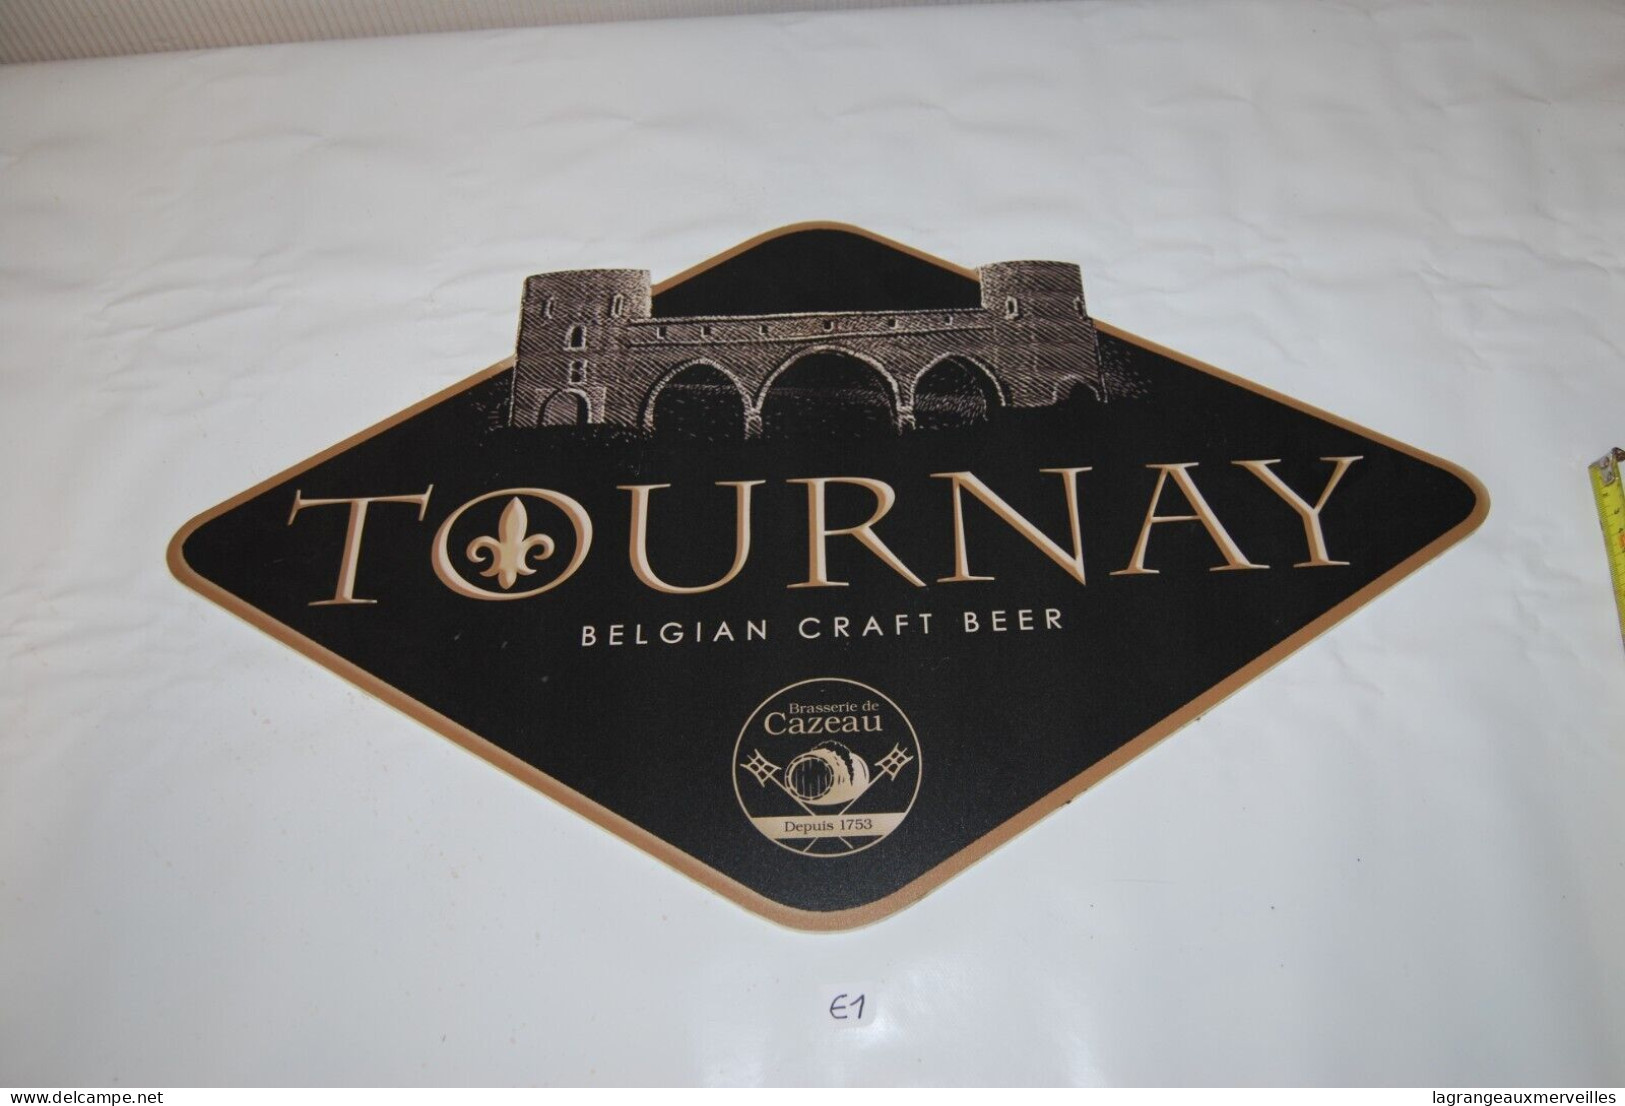 E1 Ancienne publicité - Belgian Tournay Tournai Beer